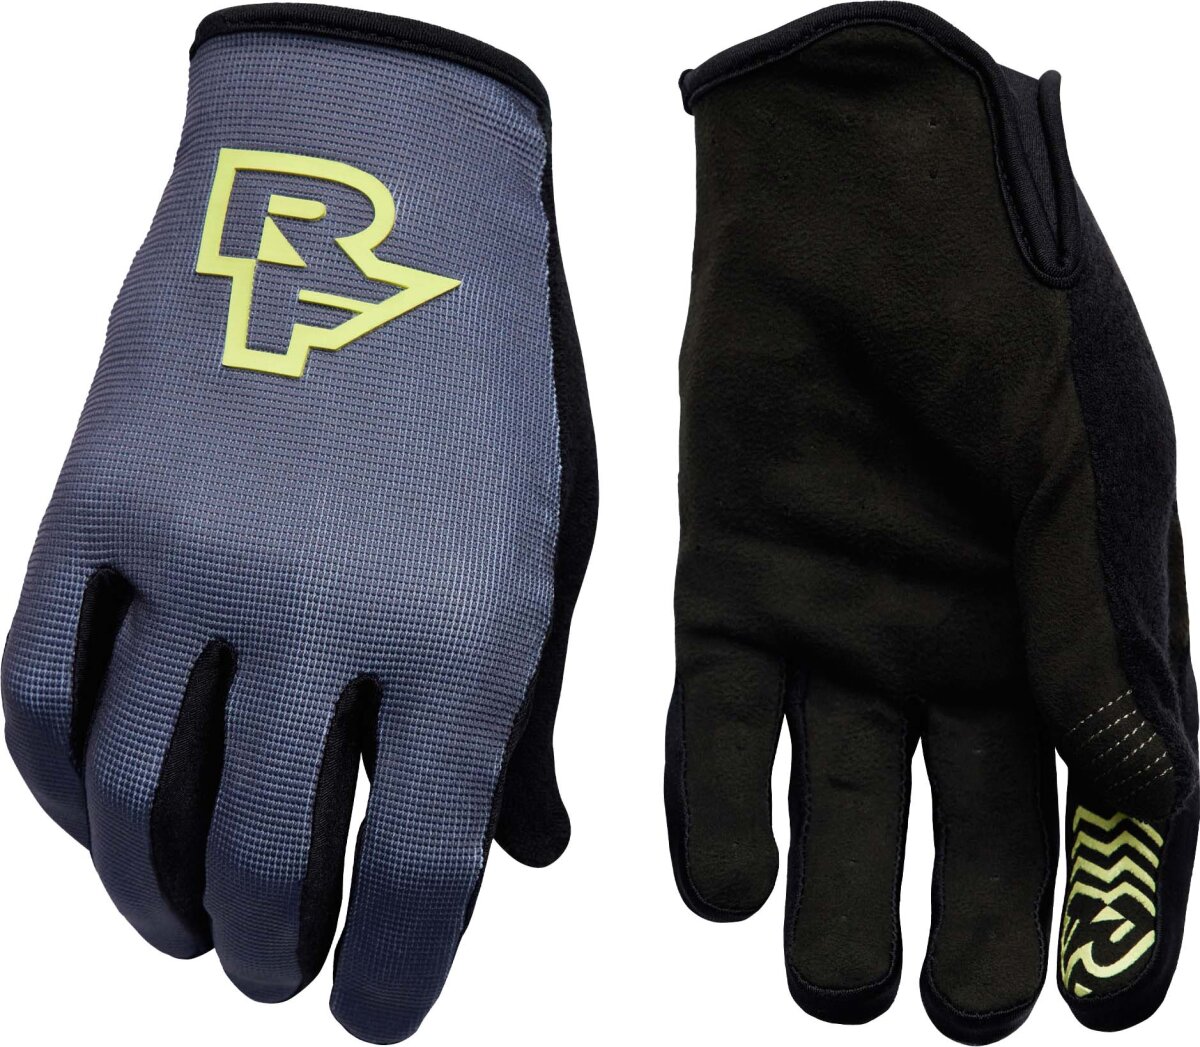 Перчатки RaceFace Trigger Full Finger Gloves (Charcoal) RFGATRIGUCHA05, RFGATRIGUCHA04, RFGATRIGUCHA02, RFGATRIGUCHA03, RFGATRIGUCHA01